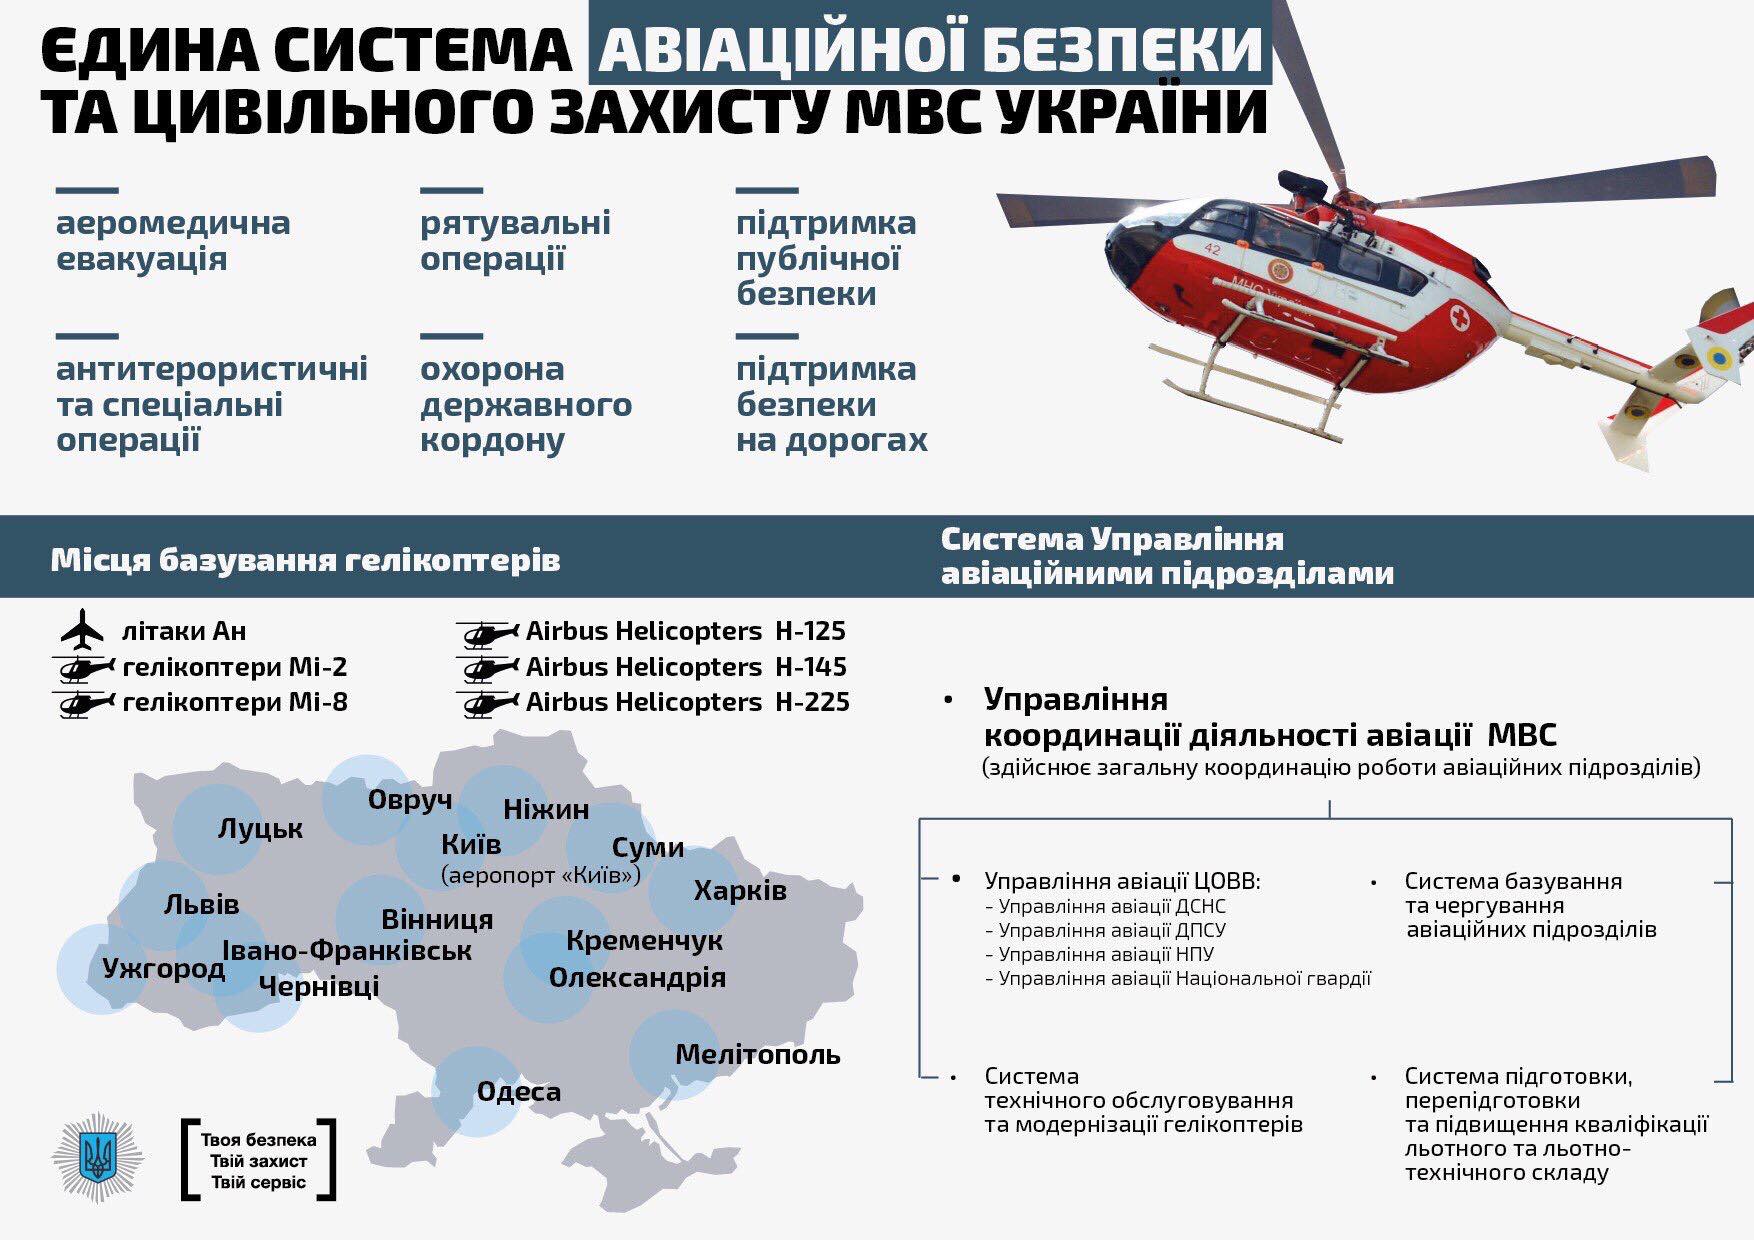 Гвинтокрили, які Аваков розмістить в тому числі у Чернівцях, виведуть авіаційну систему МВС України на третє місце у Європі